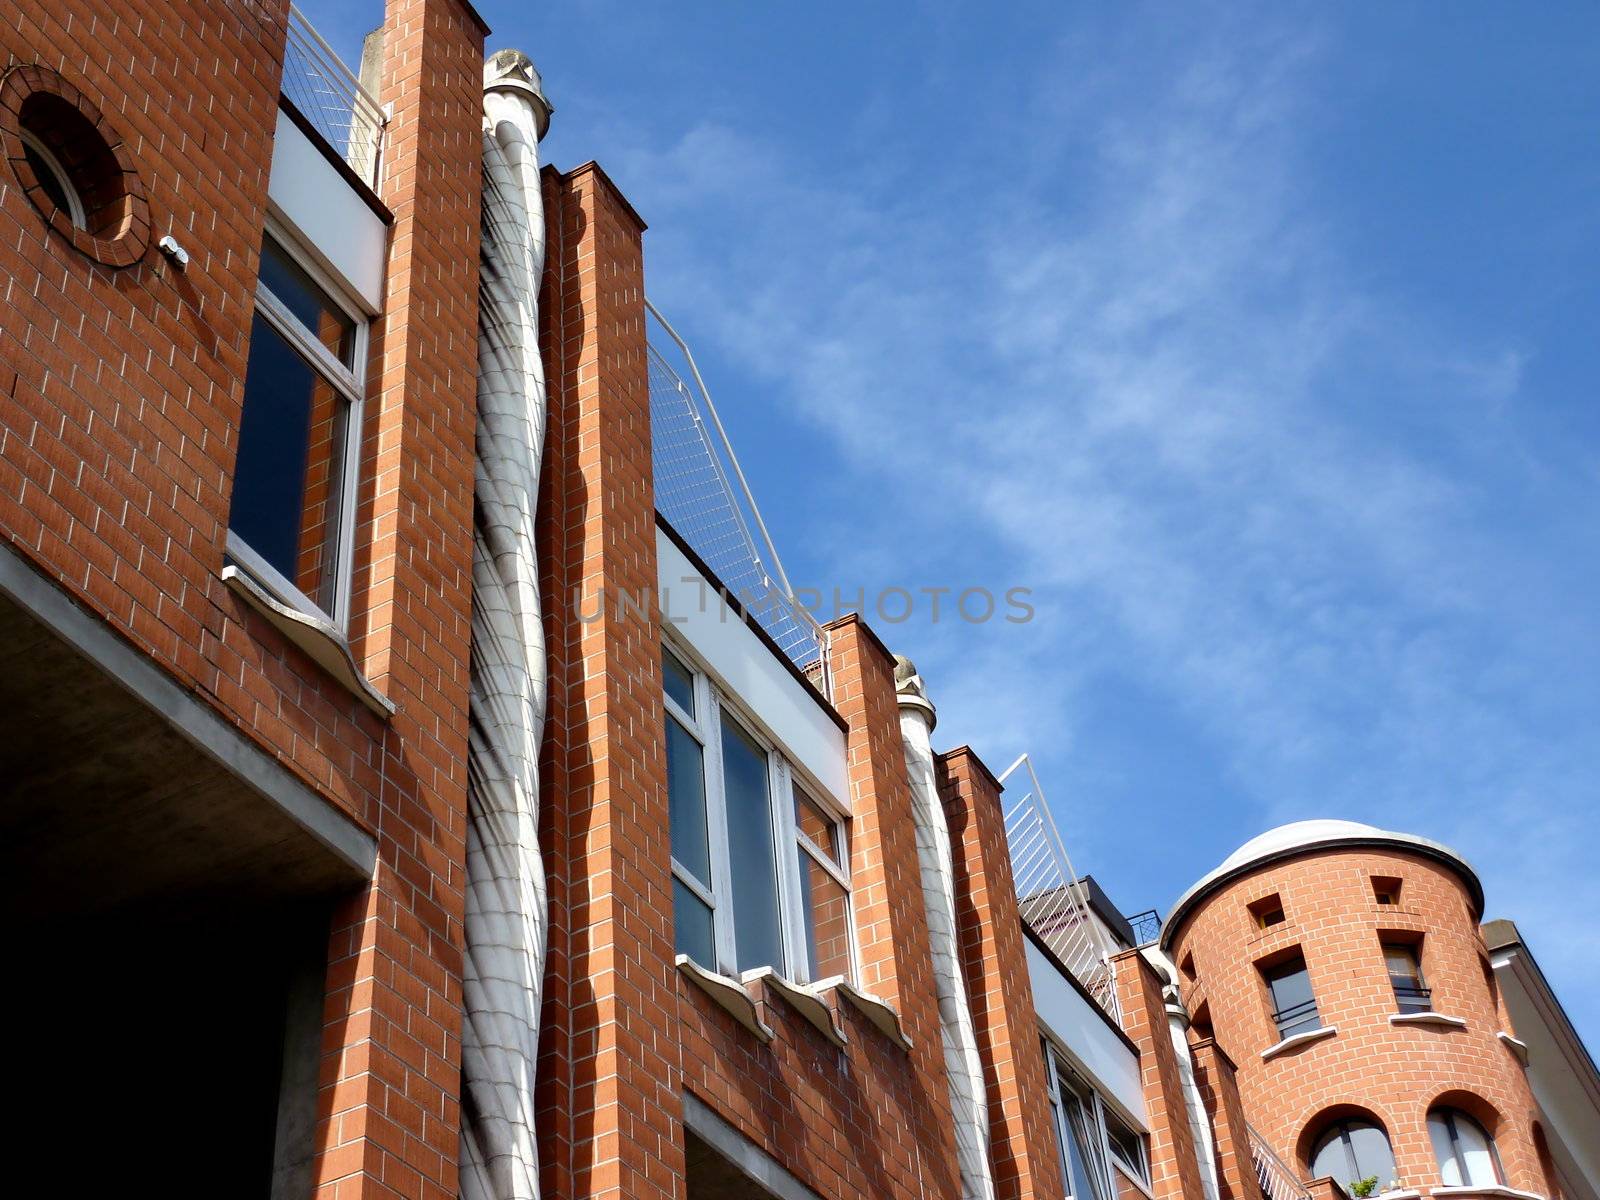 Eccentric facade of a building by Elenaphotos21